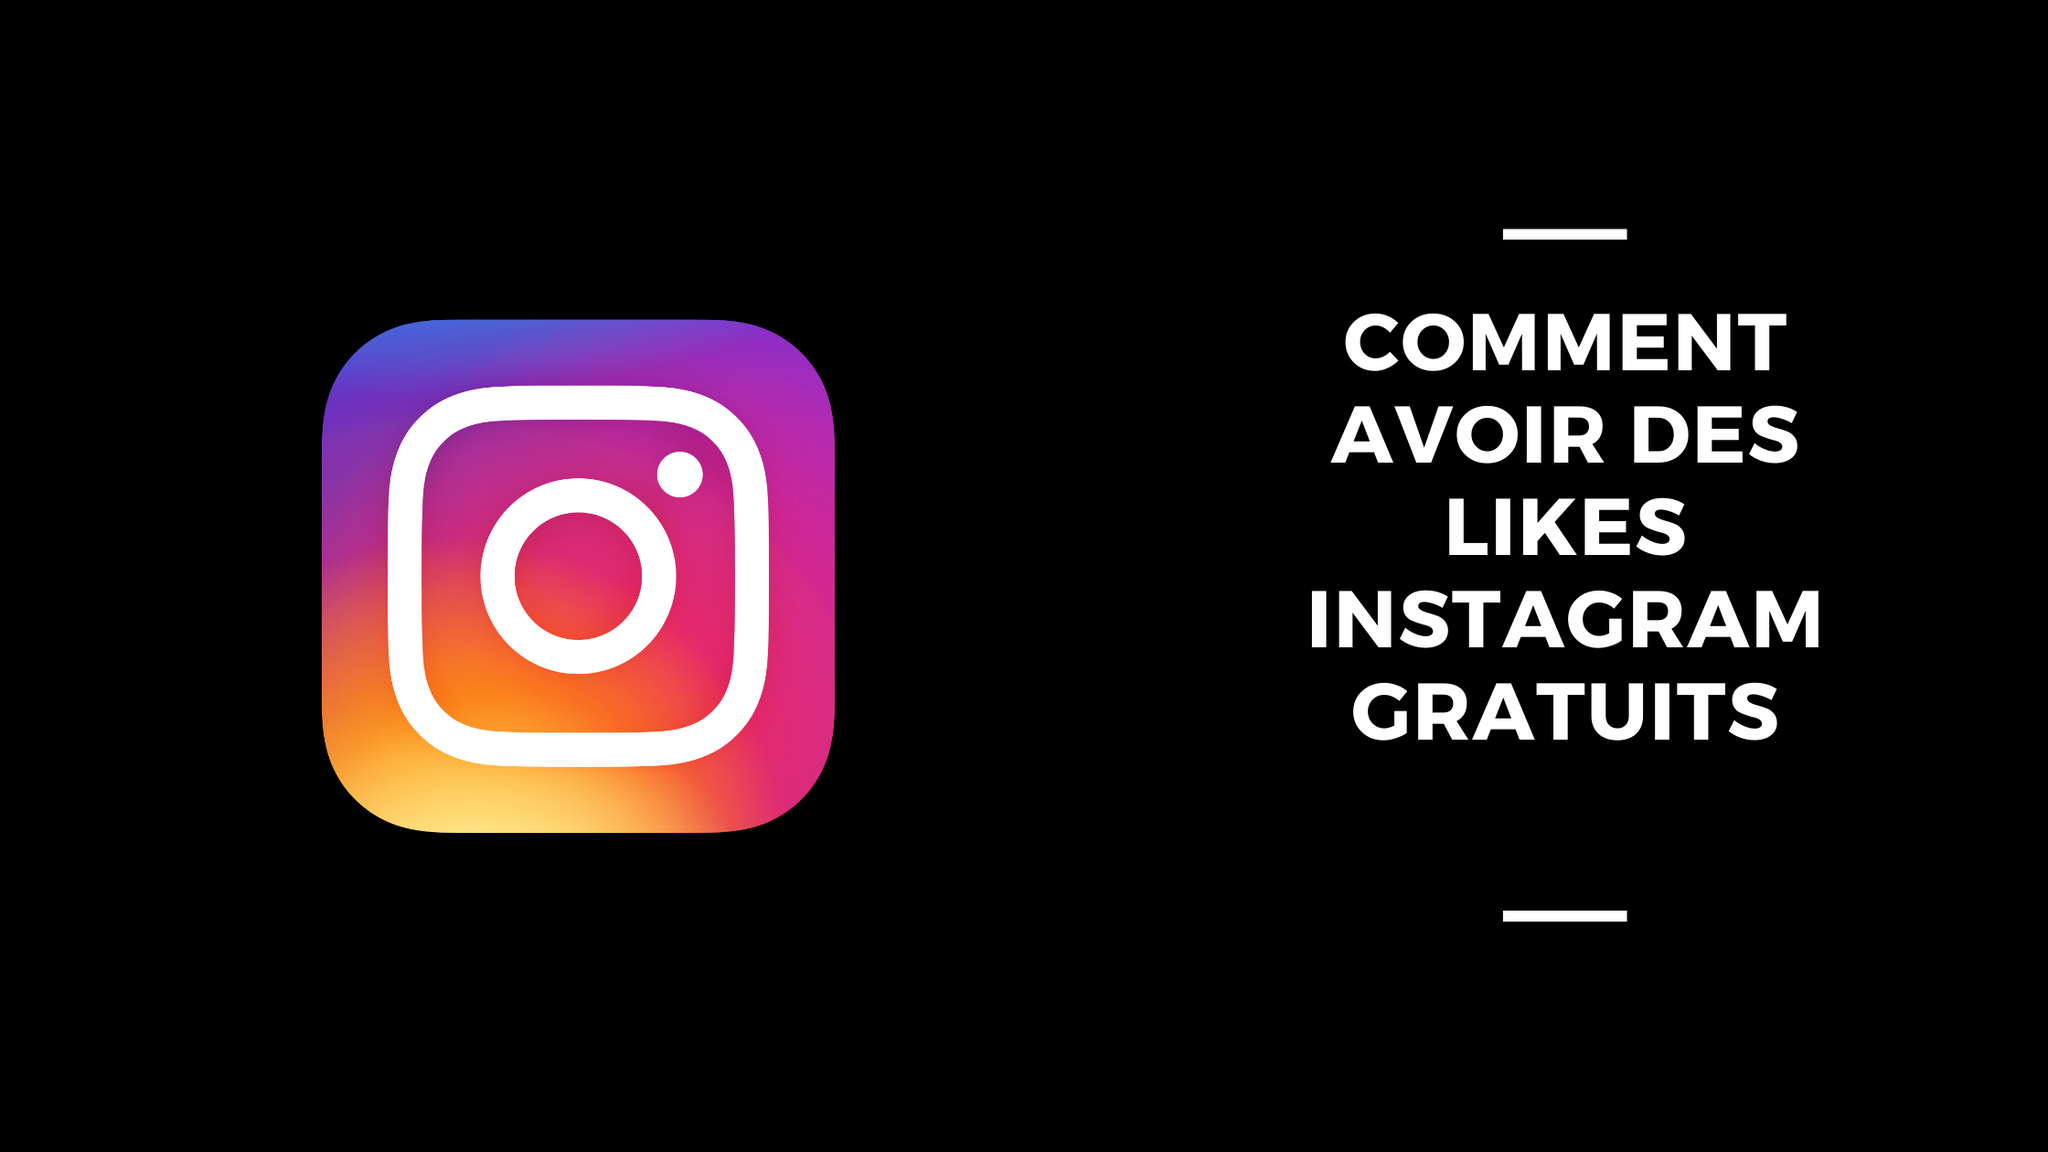 Comment Avoir Des Likes Instagram Gratuits